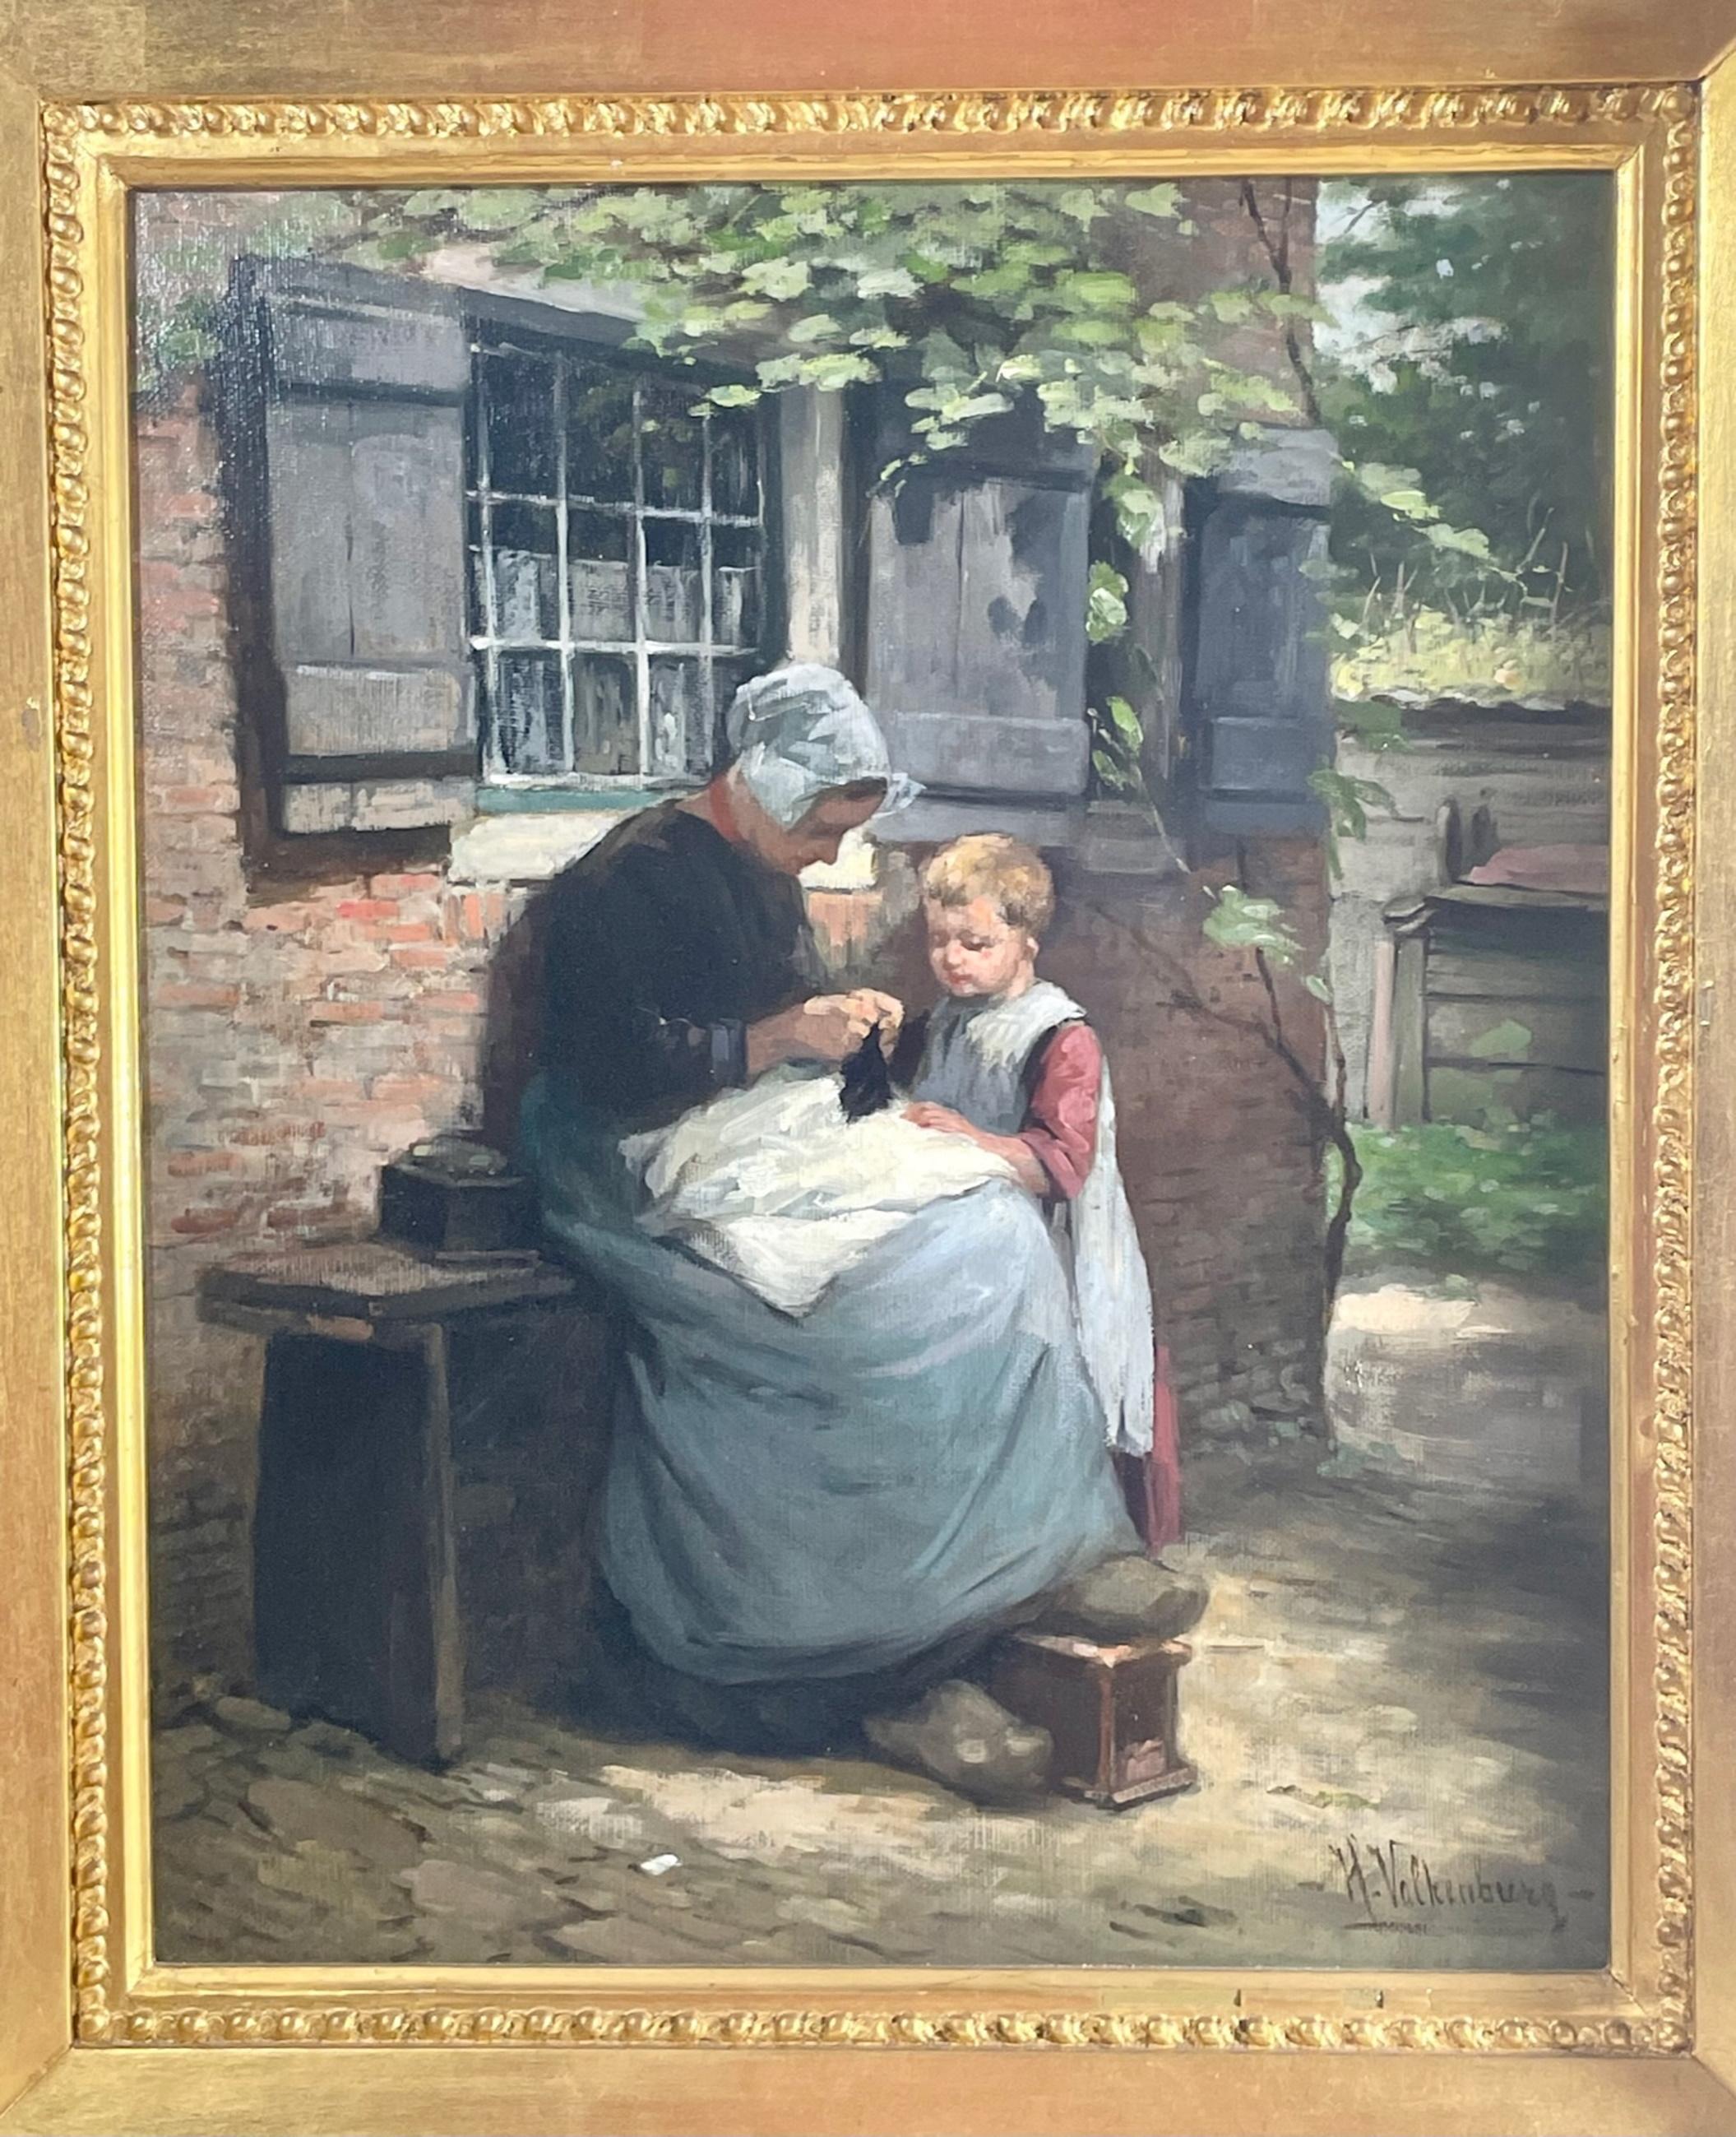 19. Jahrhundert unterzeichnet Dutch Master Gemälde Öl auf Leinwand von Mutter und Kind.

Dieses wunderbare Stück ist visuell atemberaubend. Die Künstlerin verwendet den traditionellen akademischen Realismus, um dieses Porträt der Mutterschaft zu